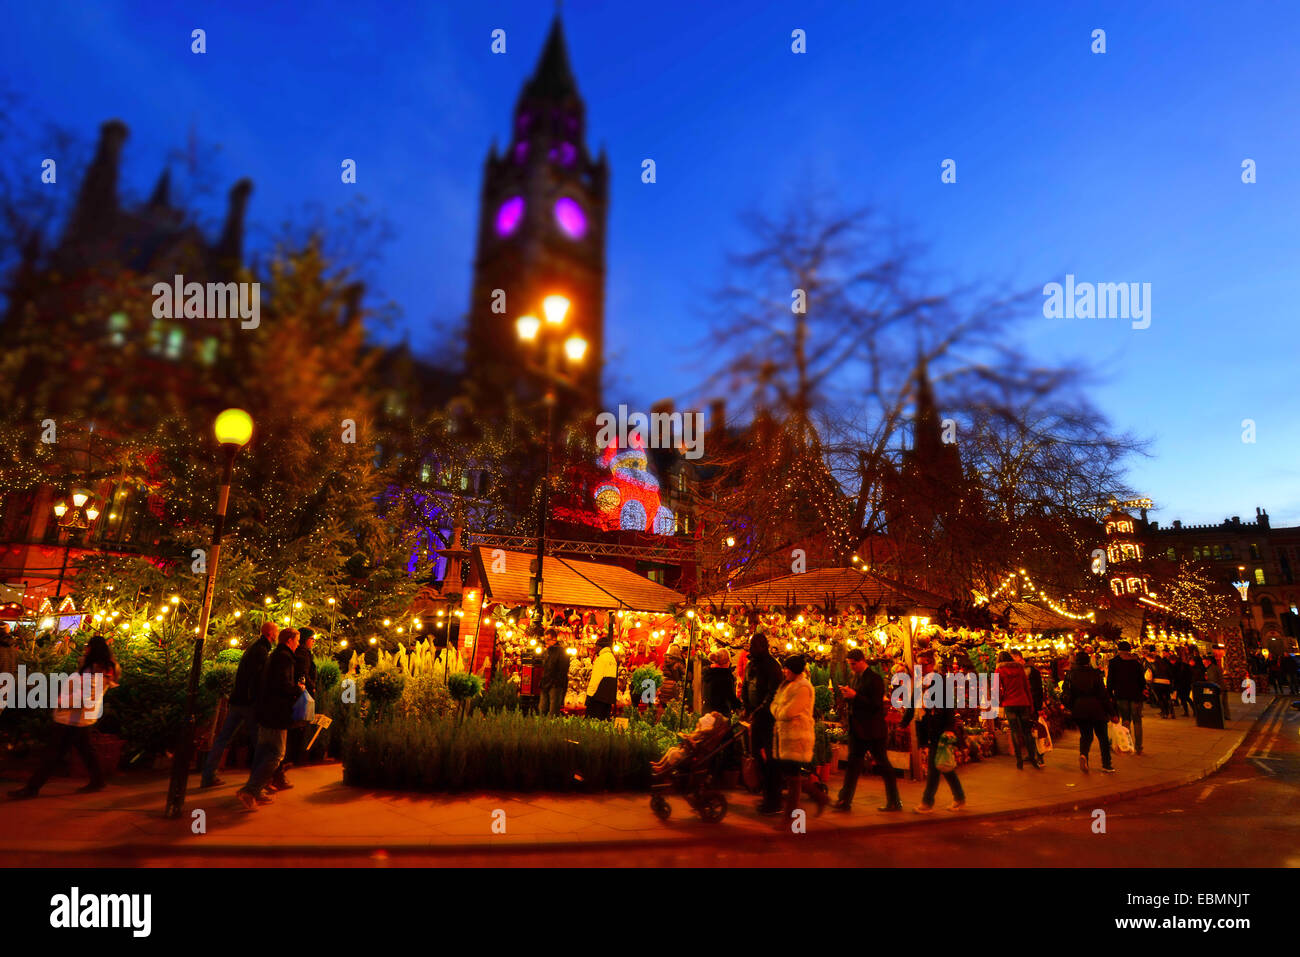 Le marché de Noël en face de l'Hôtel de ville de Manchester, dans Albert Square, Manchester, Angleterre. Banque D'Images